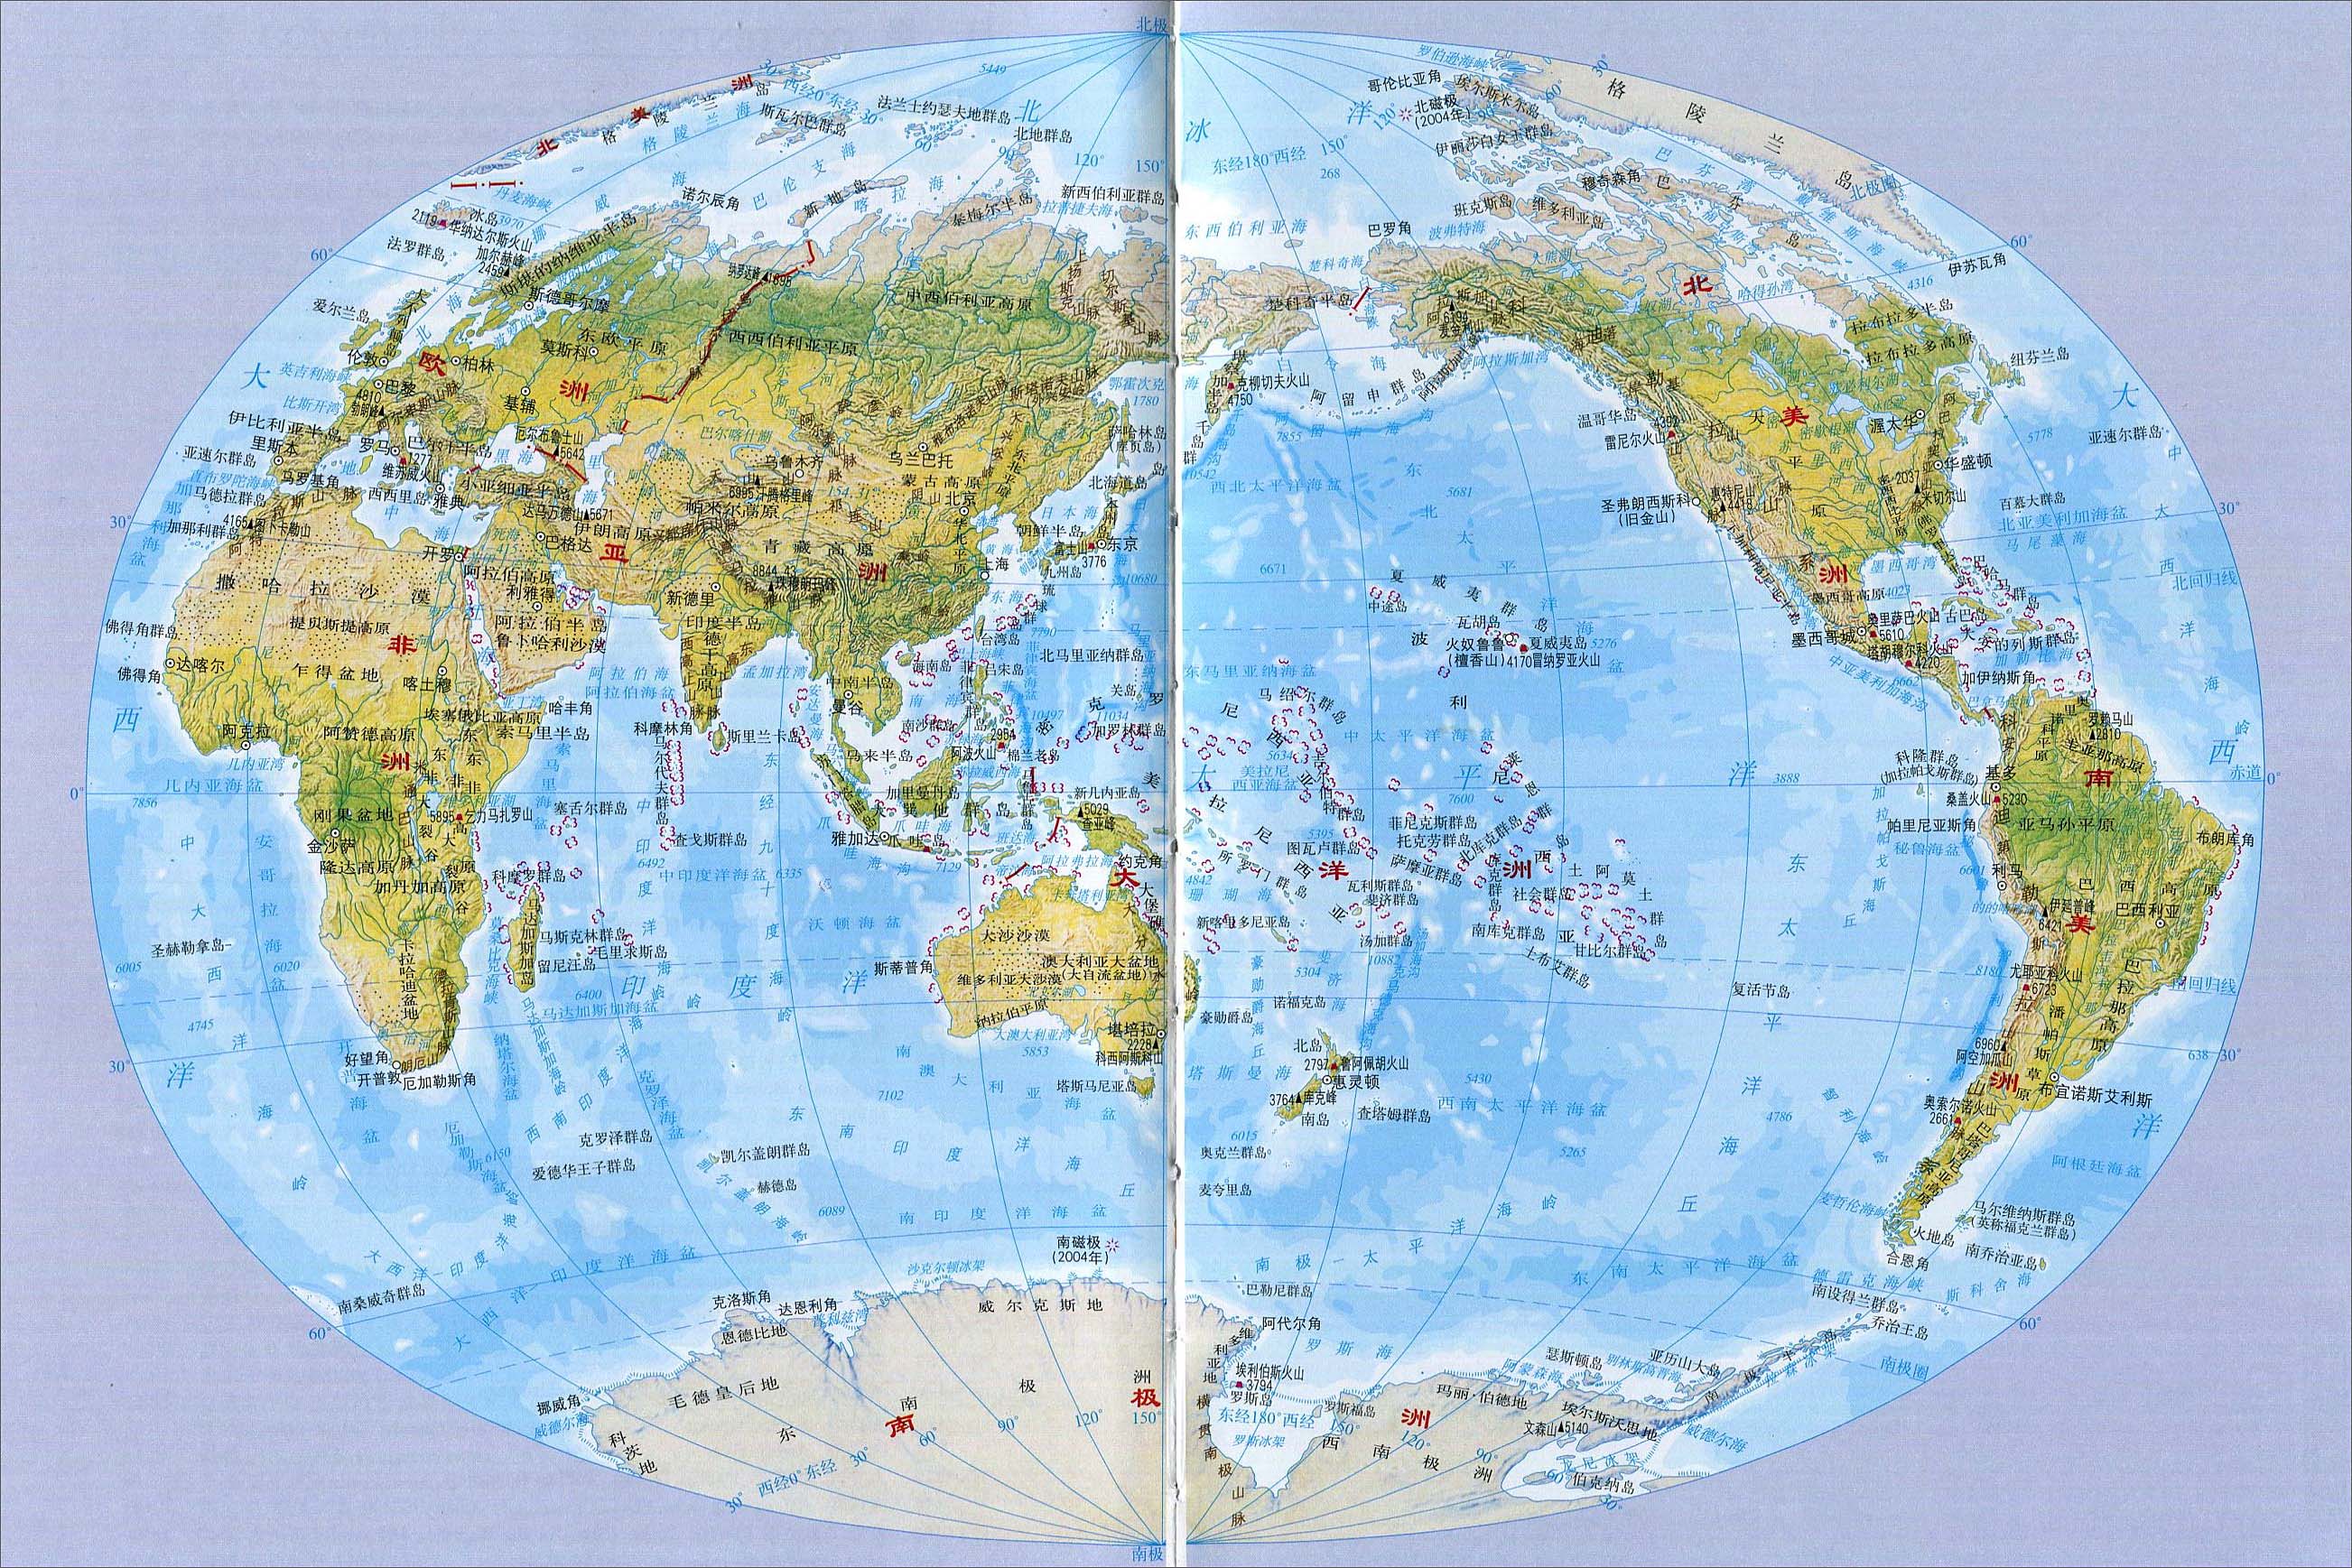 世界地图_世界地图中文版_世界地图高清版全图_地图窝